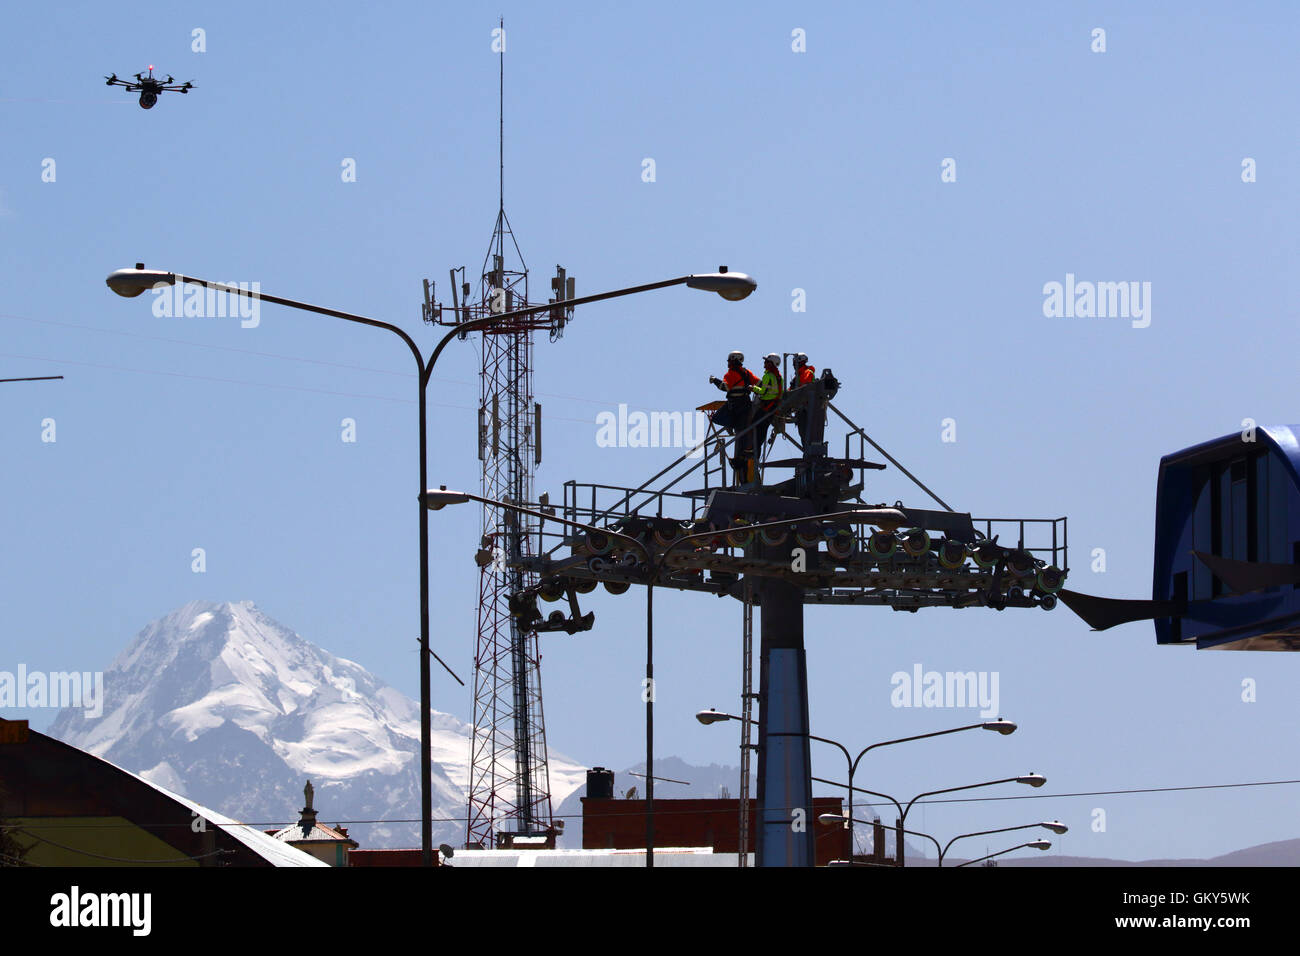 El Alto, Bolivia, 23 agosto 2016.I tecnici di attendere per un drone che sta portando una luce cavo sintetico tra i piloni di una nuova cabinovia / telecabina che è in costruzione. Questa è la prima parte del processo di installazione finale del cavo in acciaio che portano le gondole. Questo cavo auto tra Rio Seco e la Ceja a El Alto è uno di una seconda fase di linee della cabinovia che fanno parte di un progetto ambizioso per alleviare la congestione del traffico. 3 tratte dalla prima fase sono già operativi tra le città di La Paz e El Alto. Mt Huayna Potosi è in background. Foto Stock